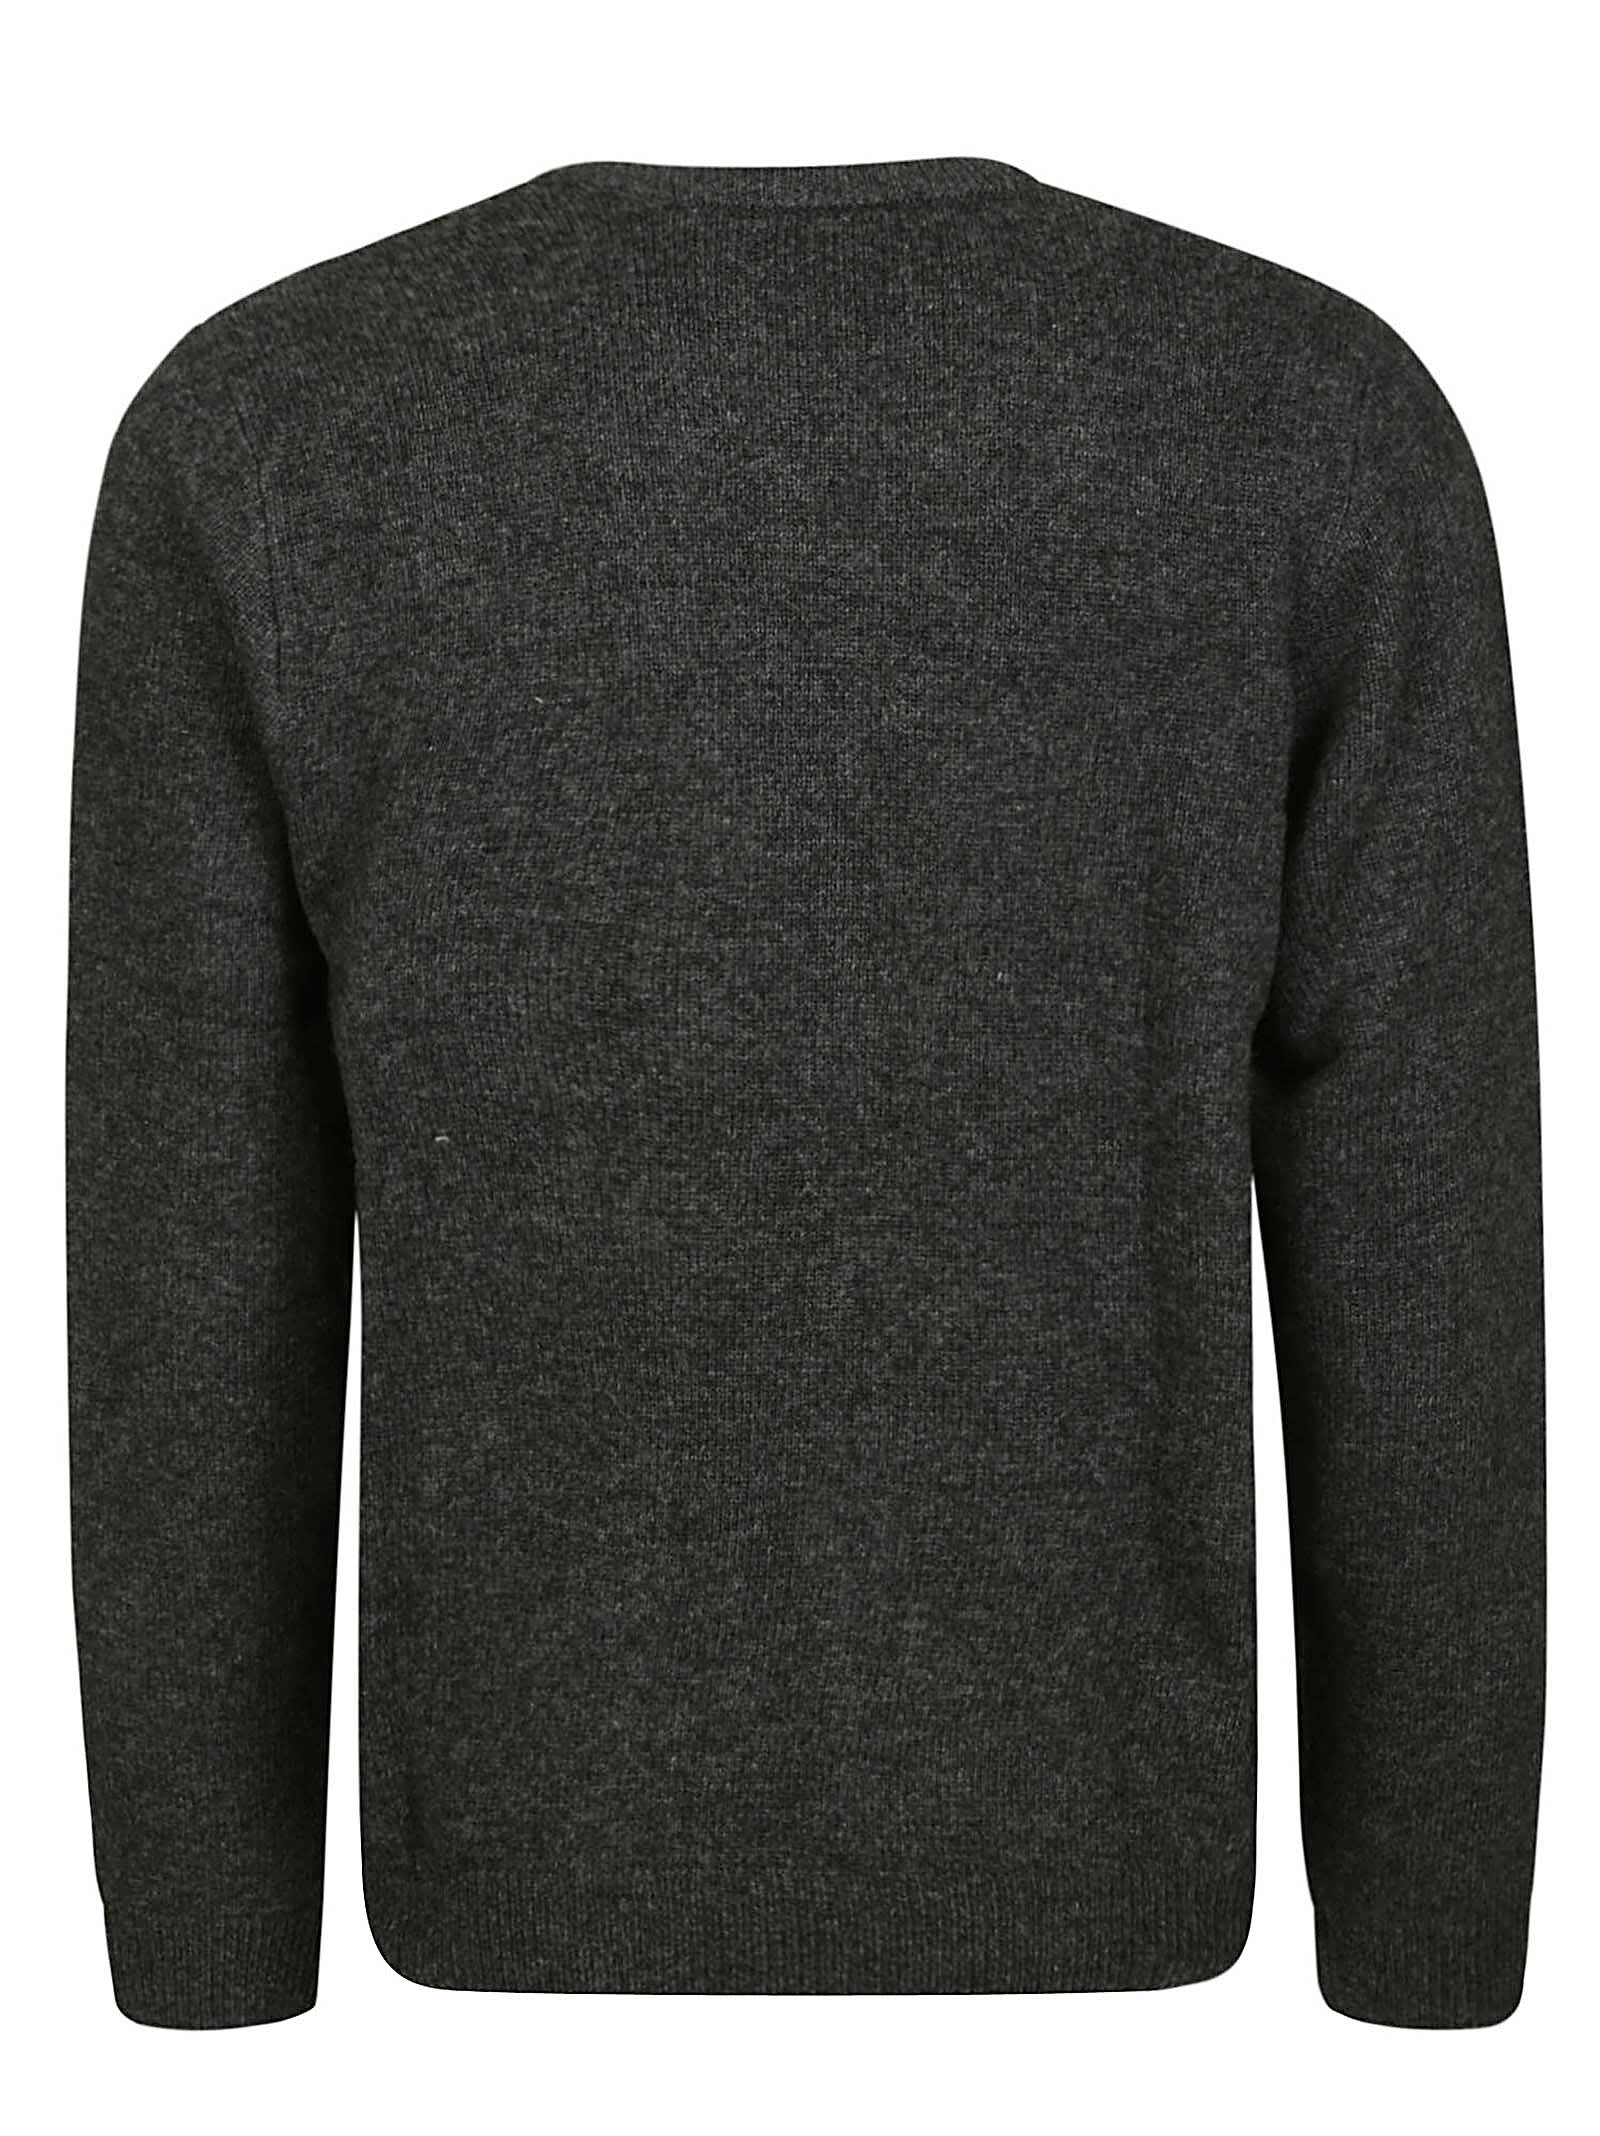 Shop Carhartt Allen Sweater In Btxx Black Heather